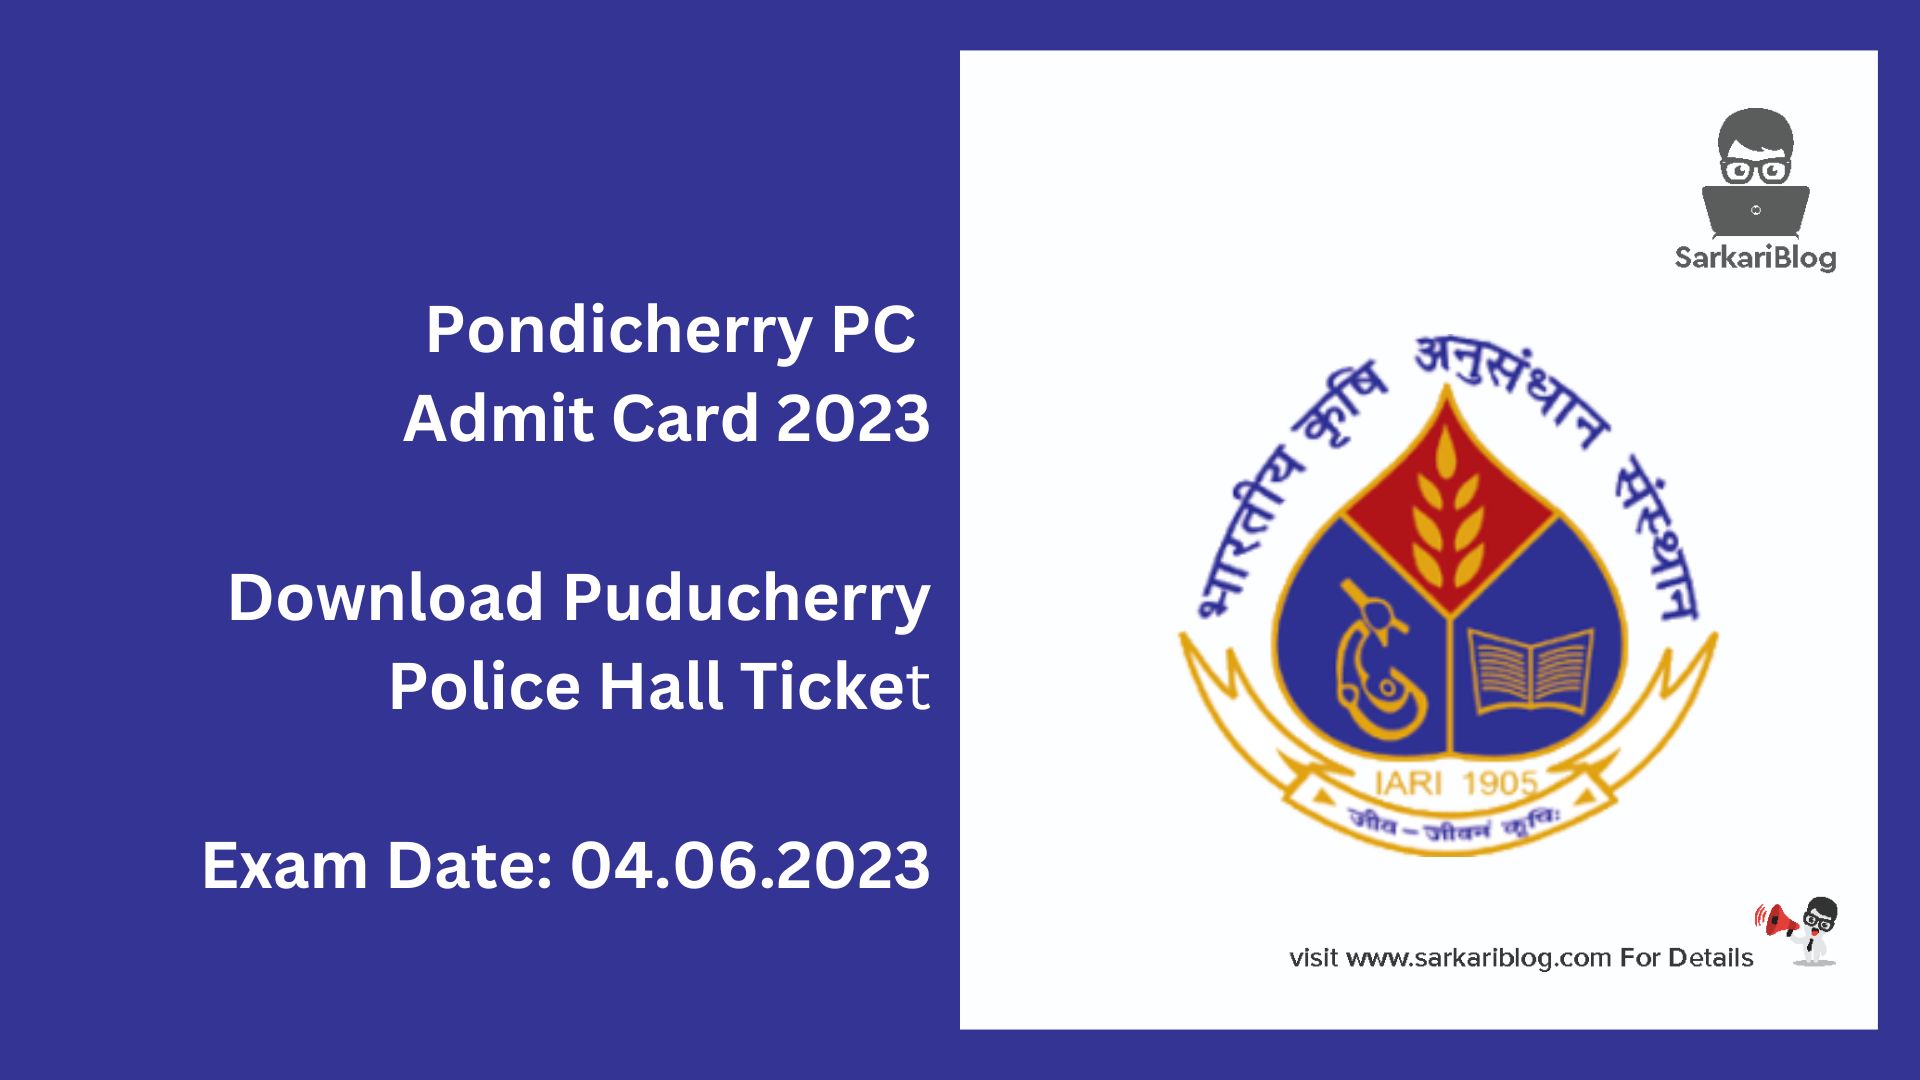 Pondicherry PC Admit Card 2023